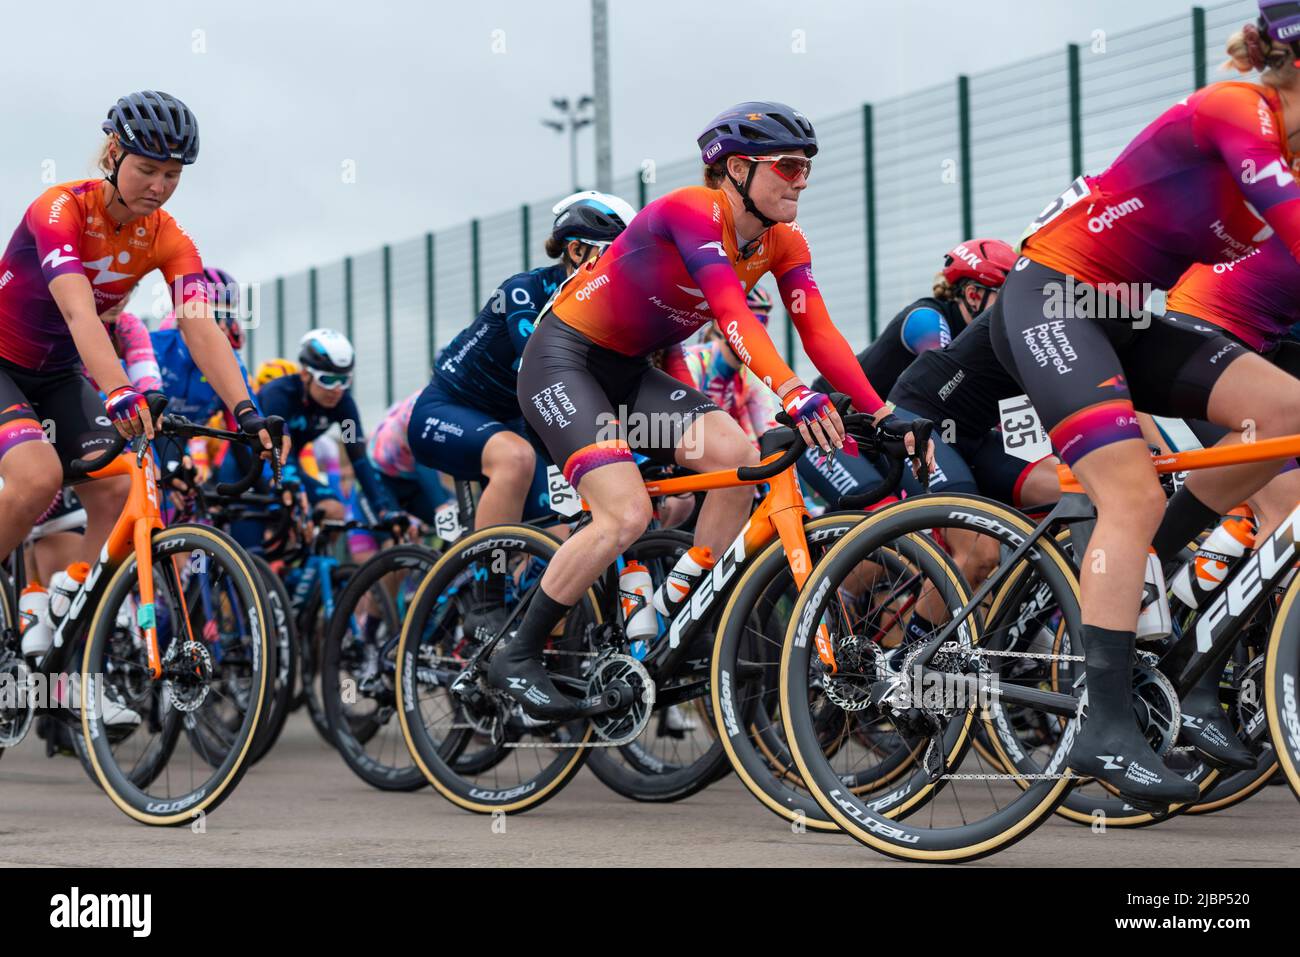 Cyclistes quittant le Colchester Sports Park pour la course cycliste UCI Women’s Tour Stage 1 à Bury St Edmunds. Les cavaliers de la santé humaine Banque D'Images